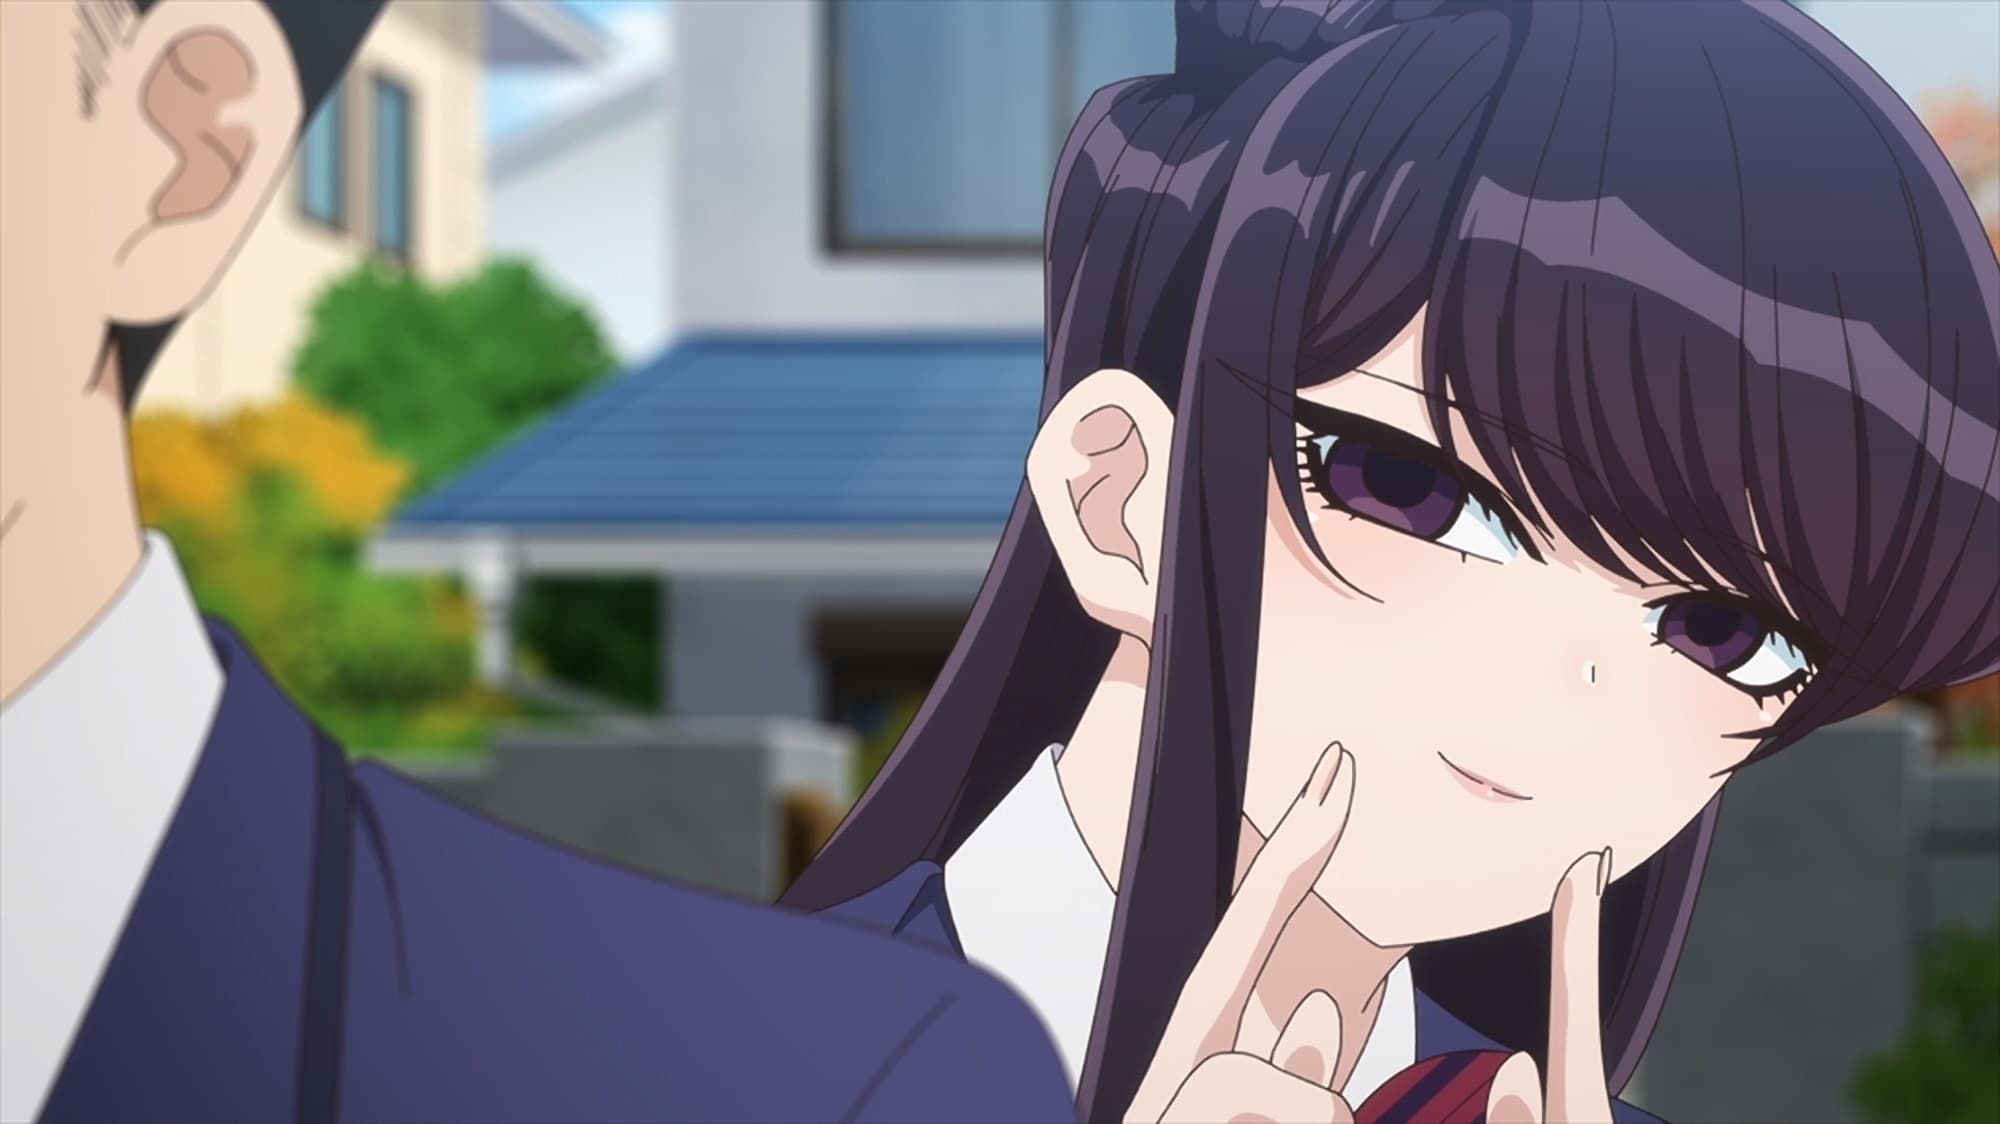 Adaptação em anime de Komi Can't Communicate retorna com novos episódios em  abril de 2022 - Crunchyroll Notícias